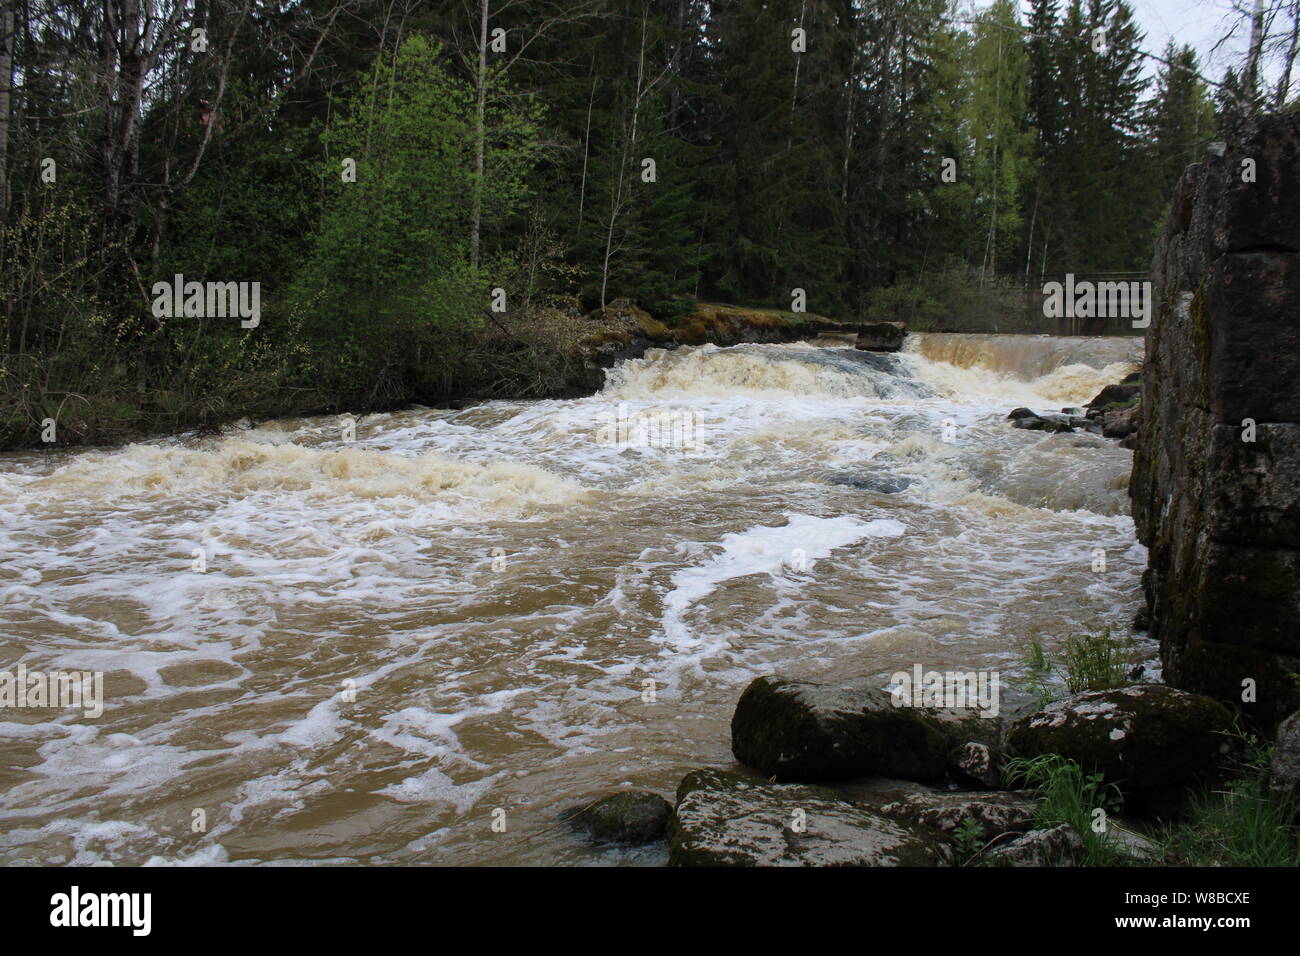 Myllykulmankoski rapids in Orimattila, Finland. Stock Photo